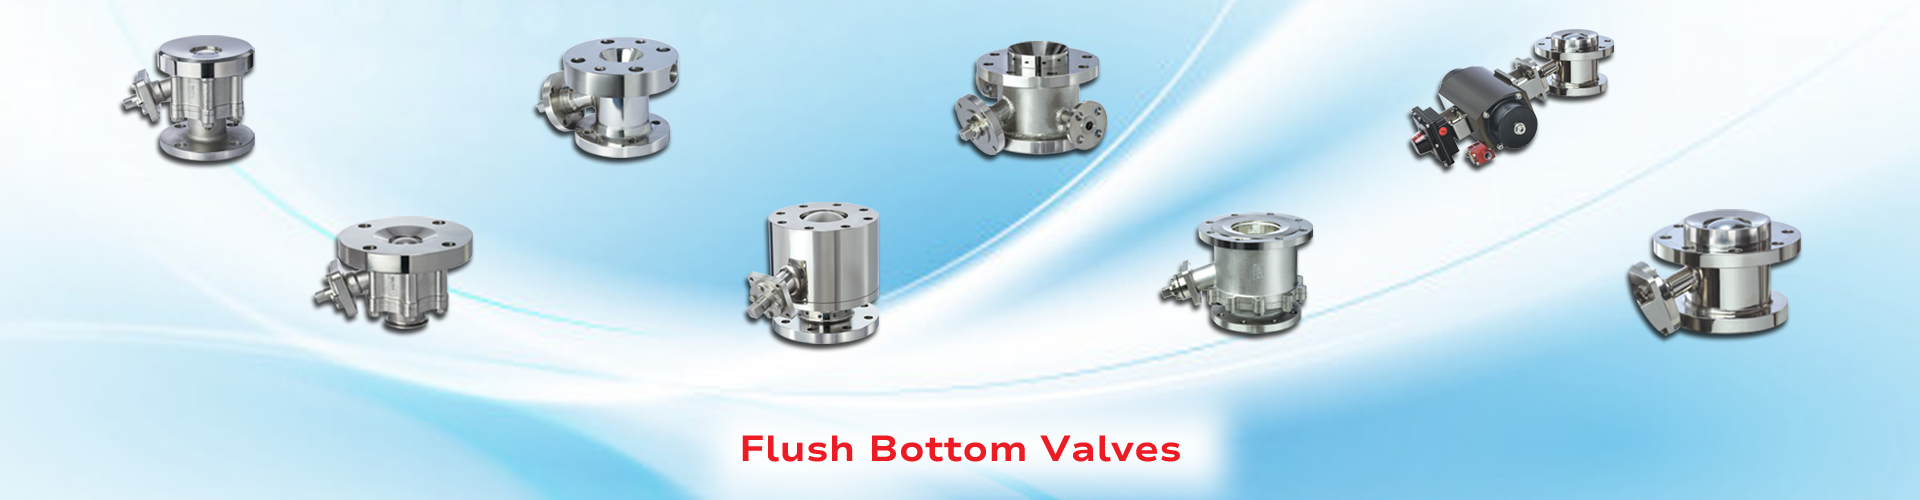 Flush Bottom Ball Valves